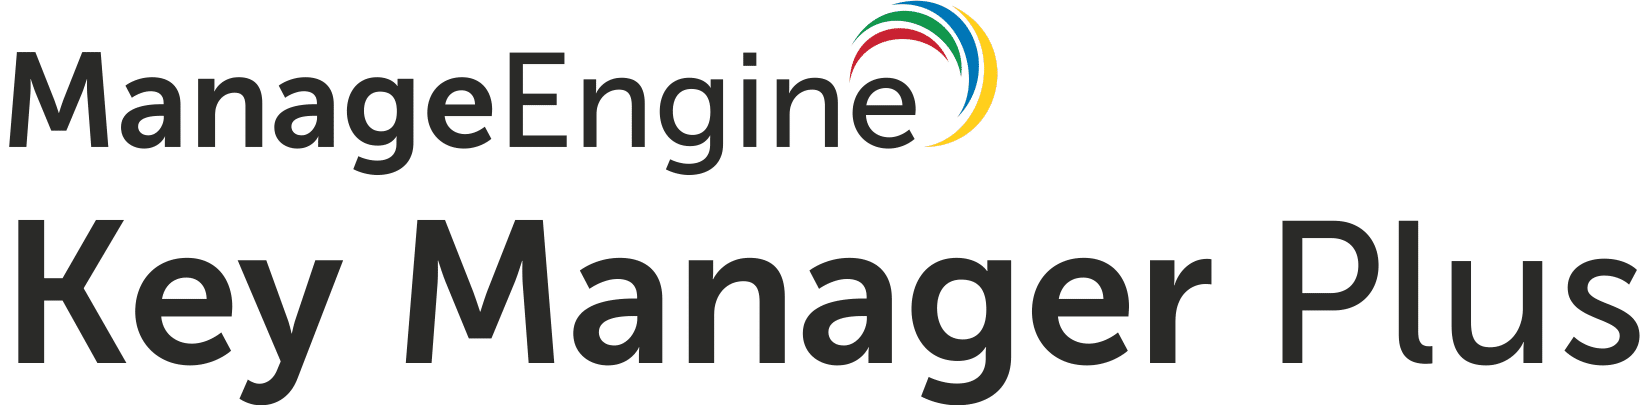 ManageEngine Key Manager Plus - Azure Key Vault Free Alternatives